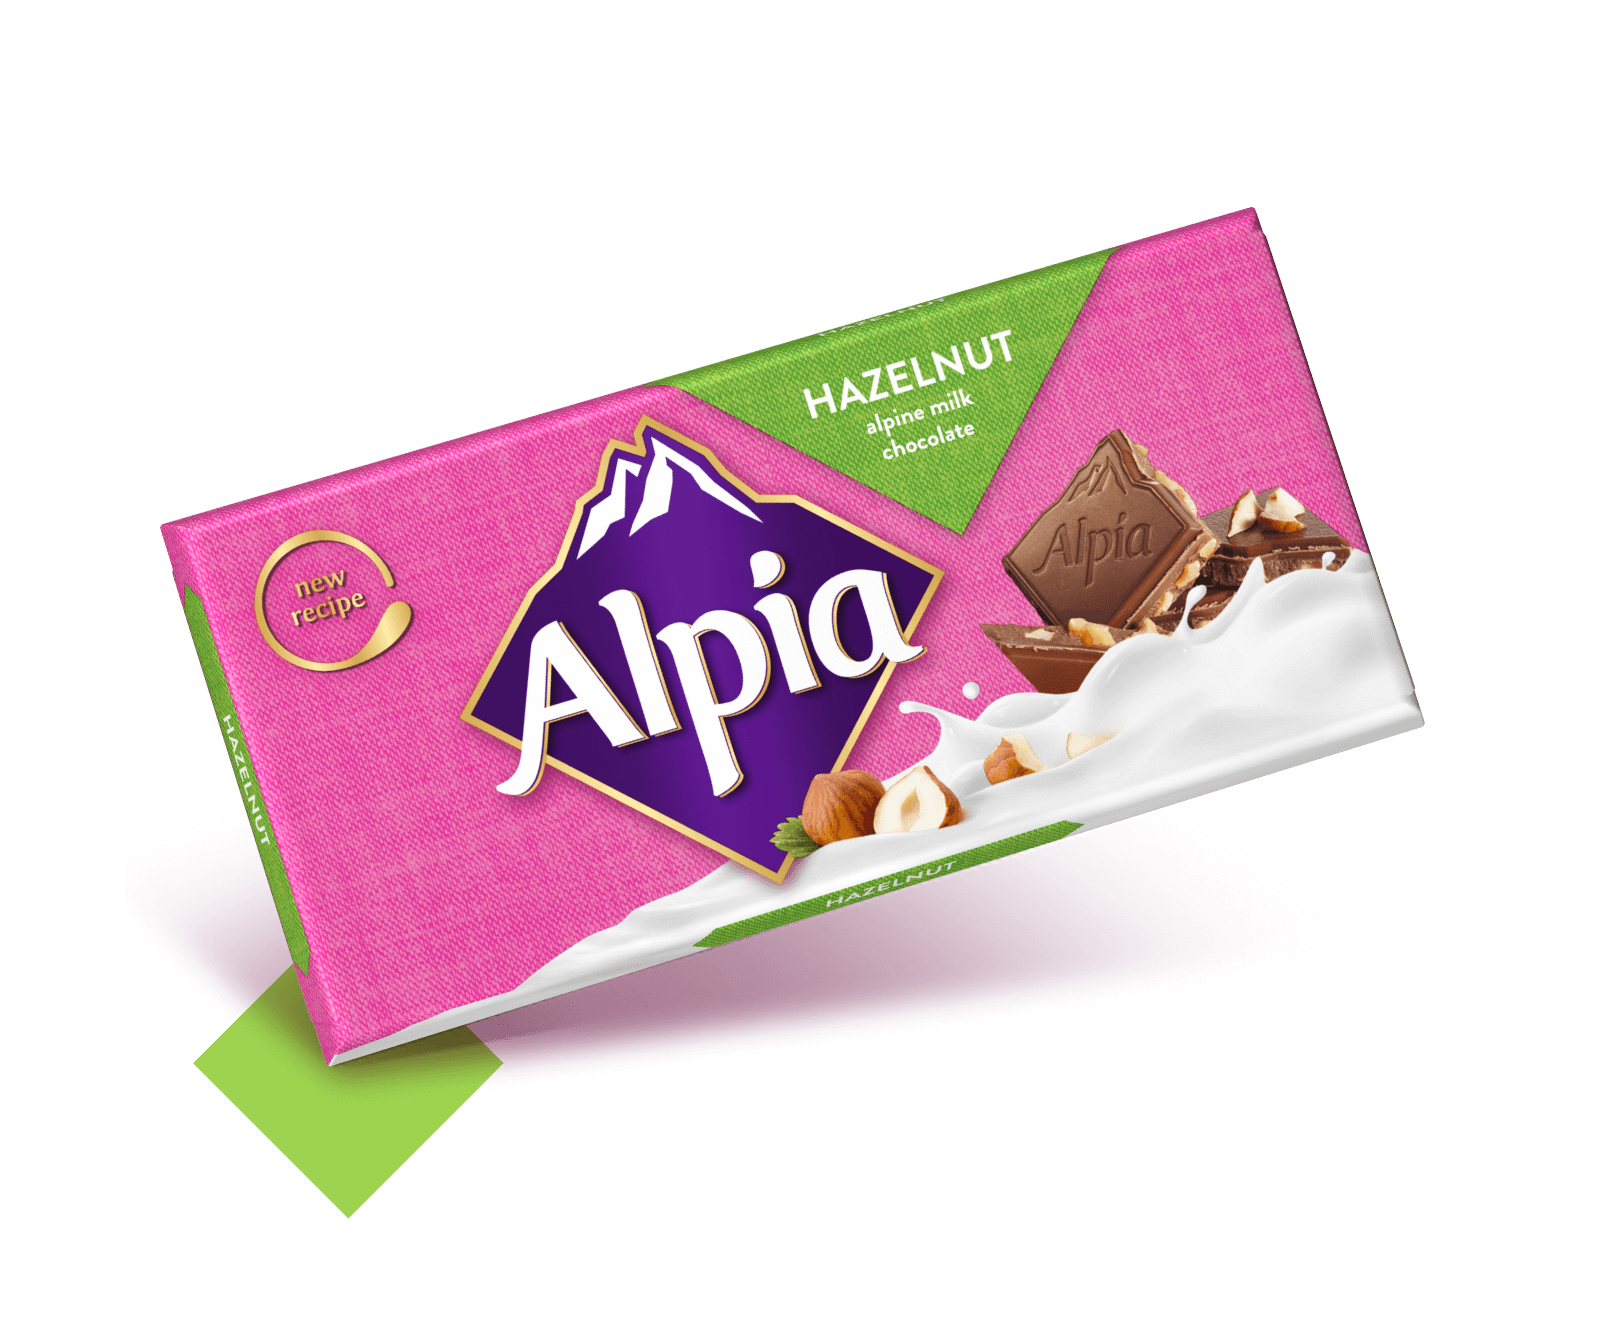 alpiaschokoladentafelnhaselnussen Alpia Schokolade